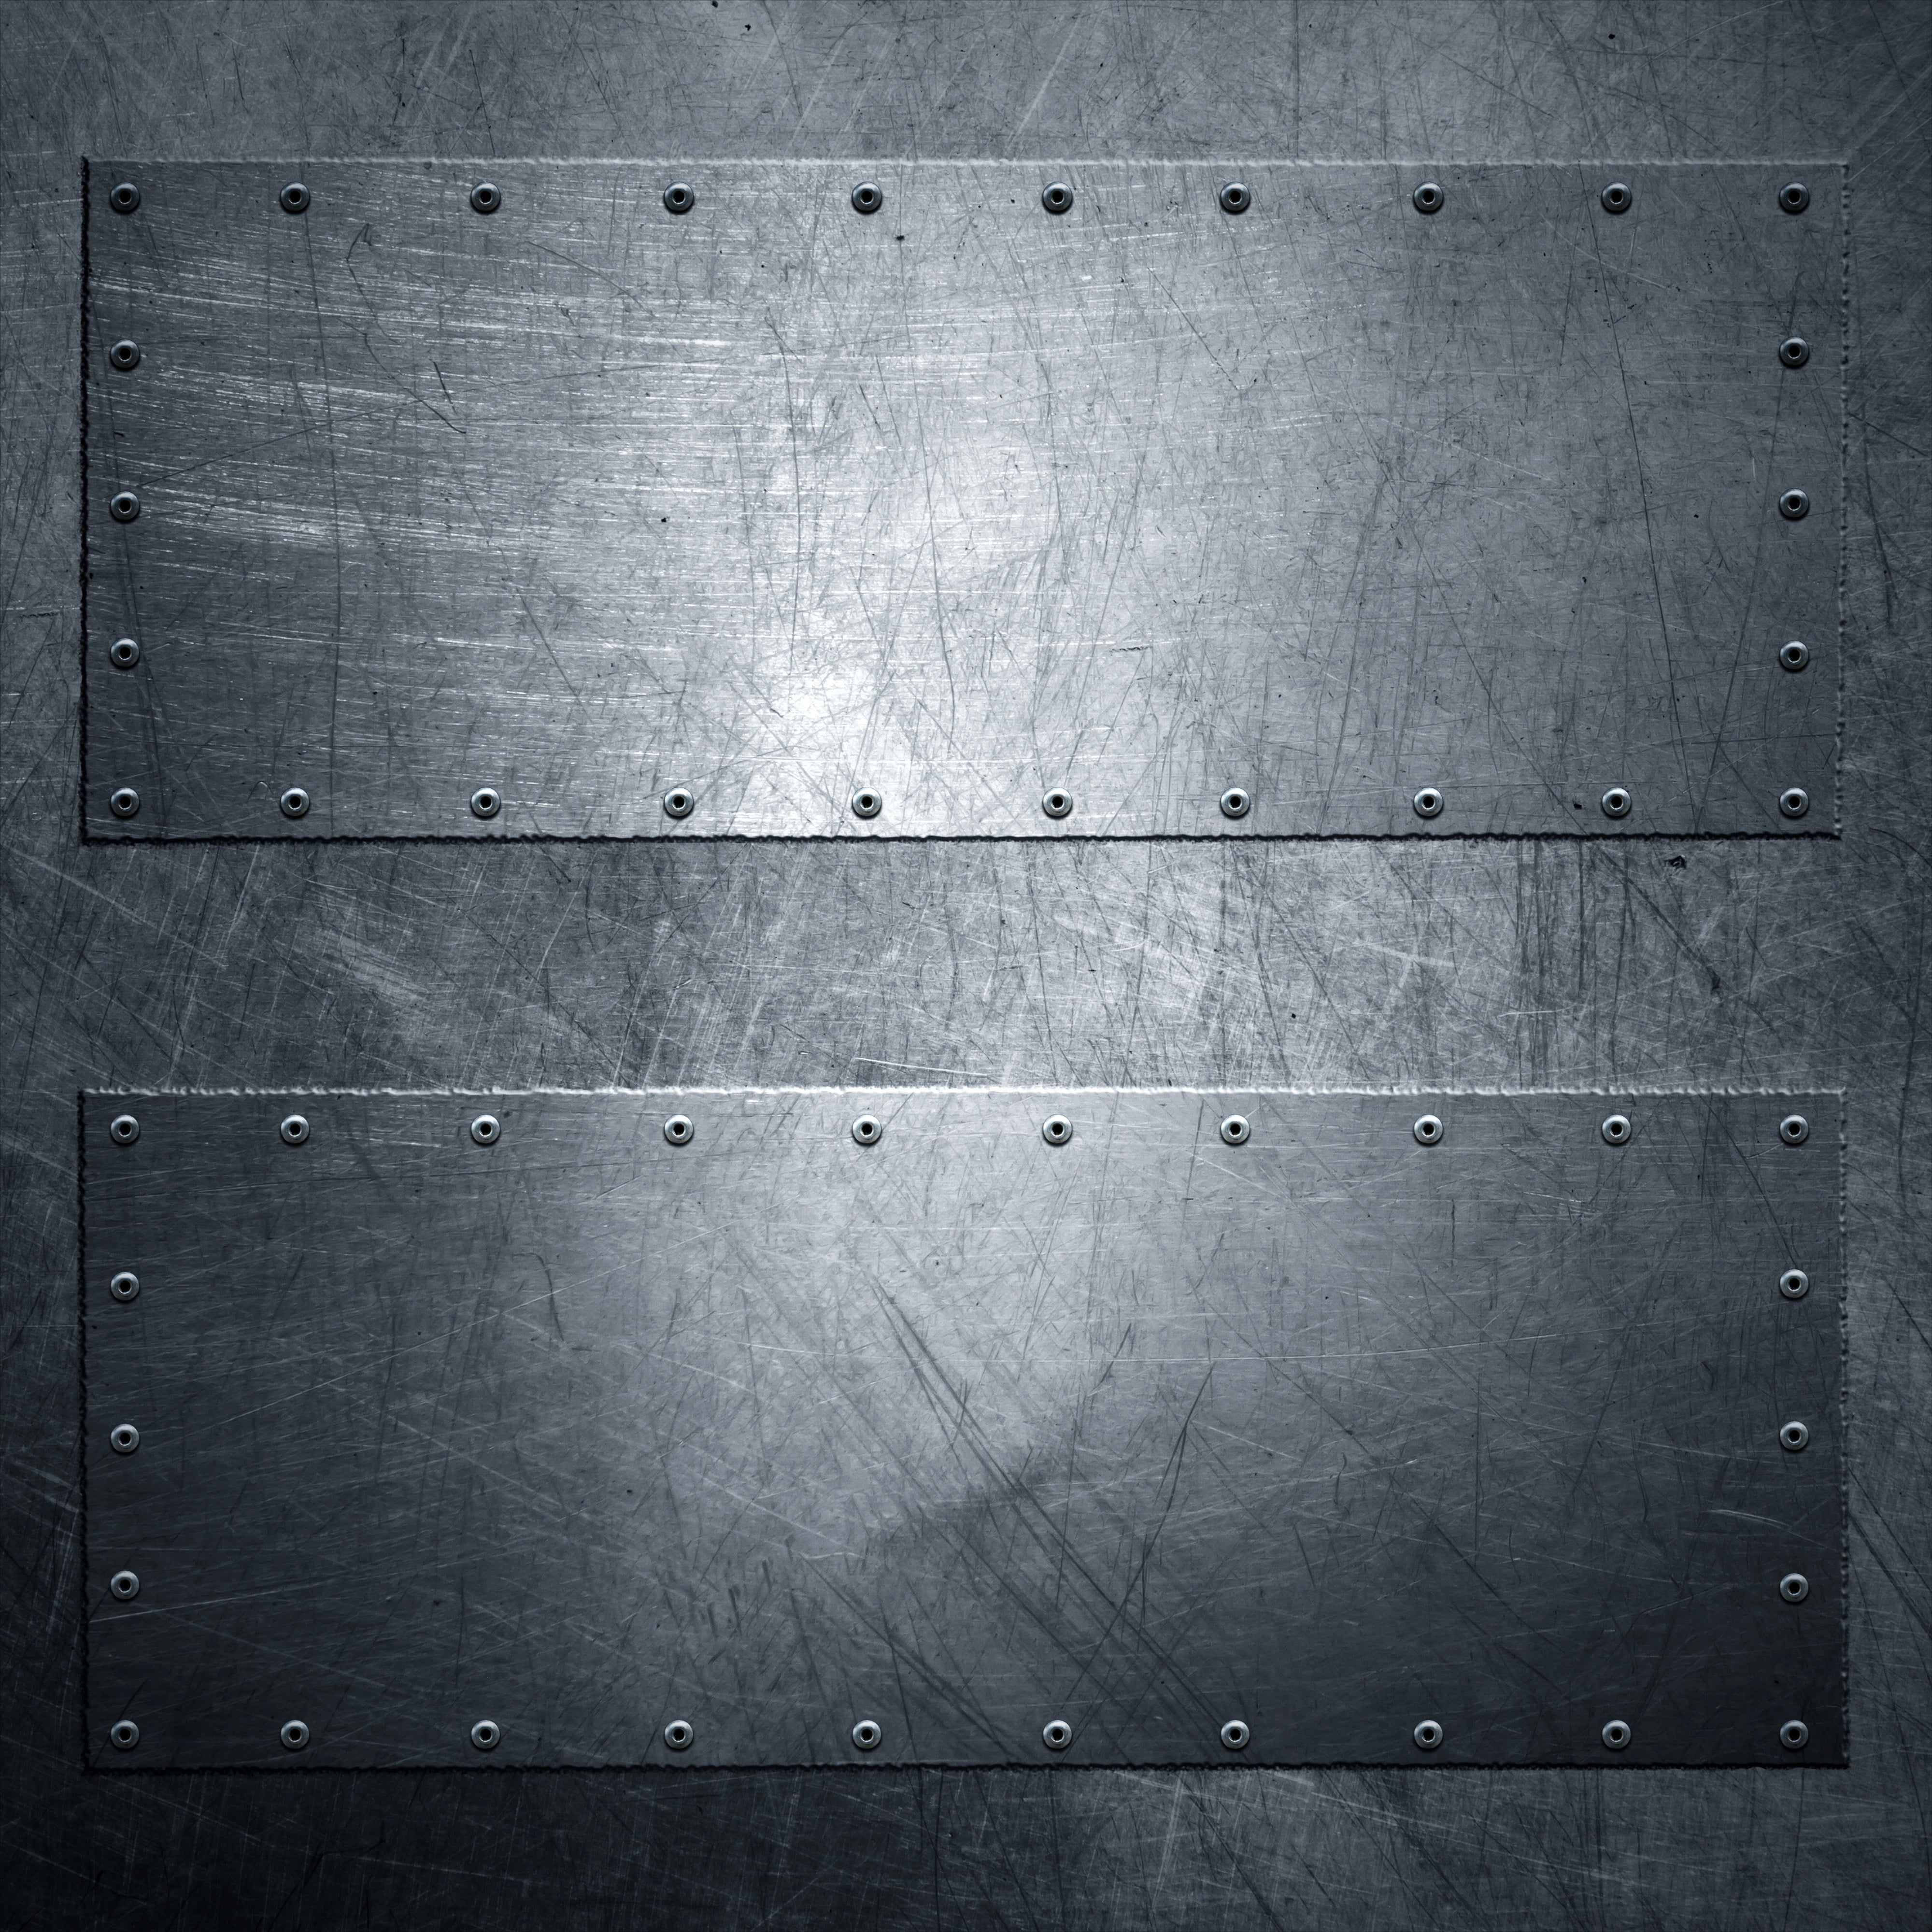 two rectangular gray platforms, metal, texture, grunge, rivets